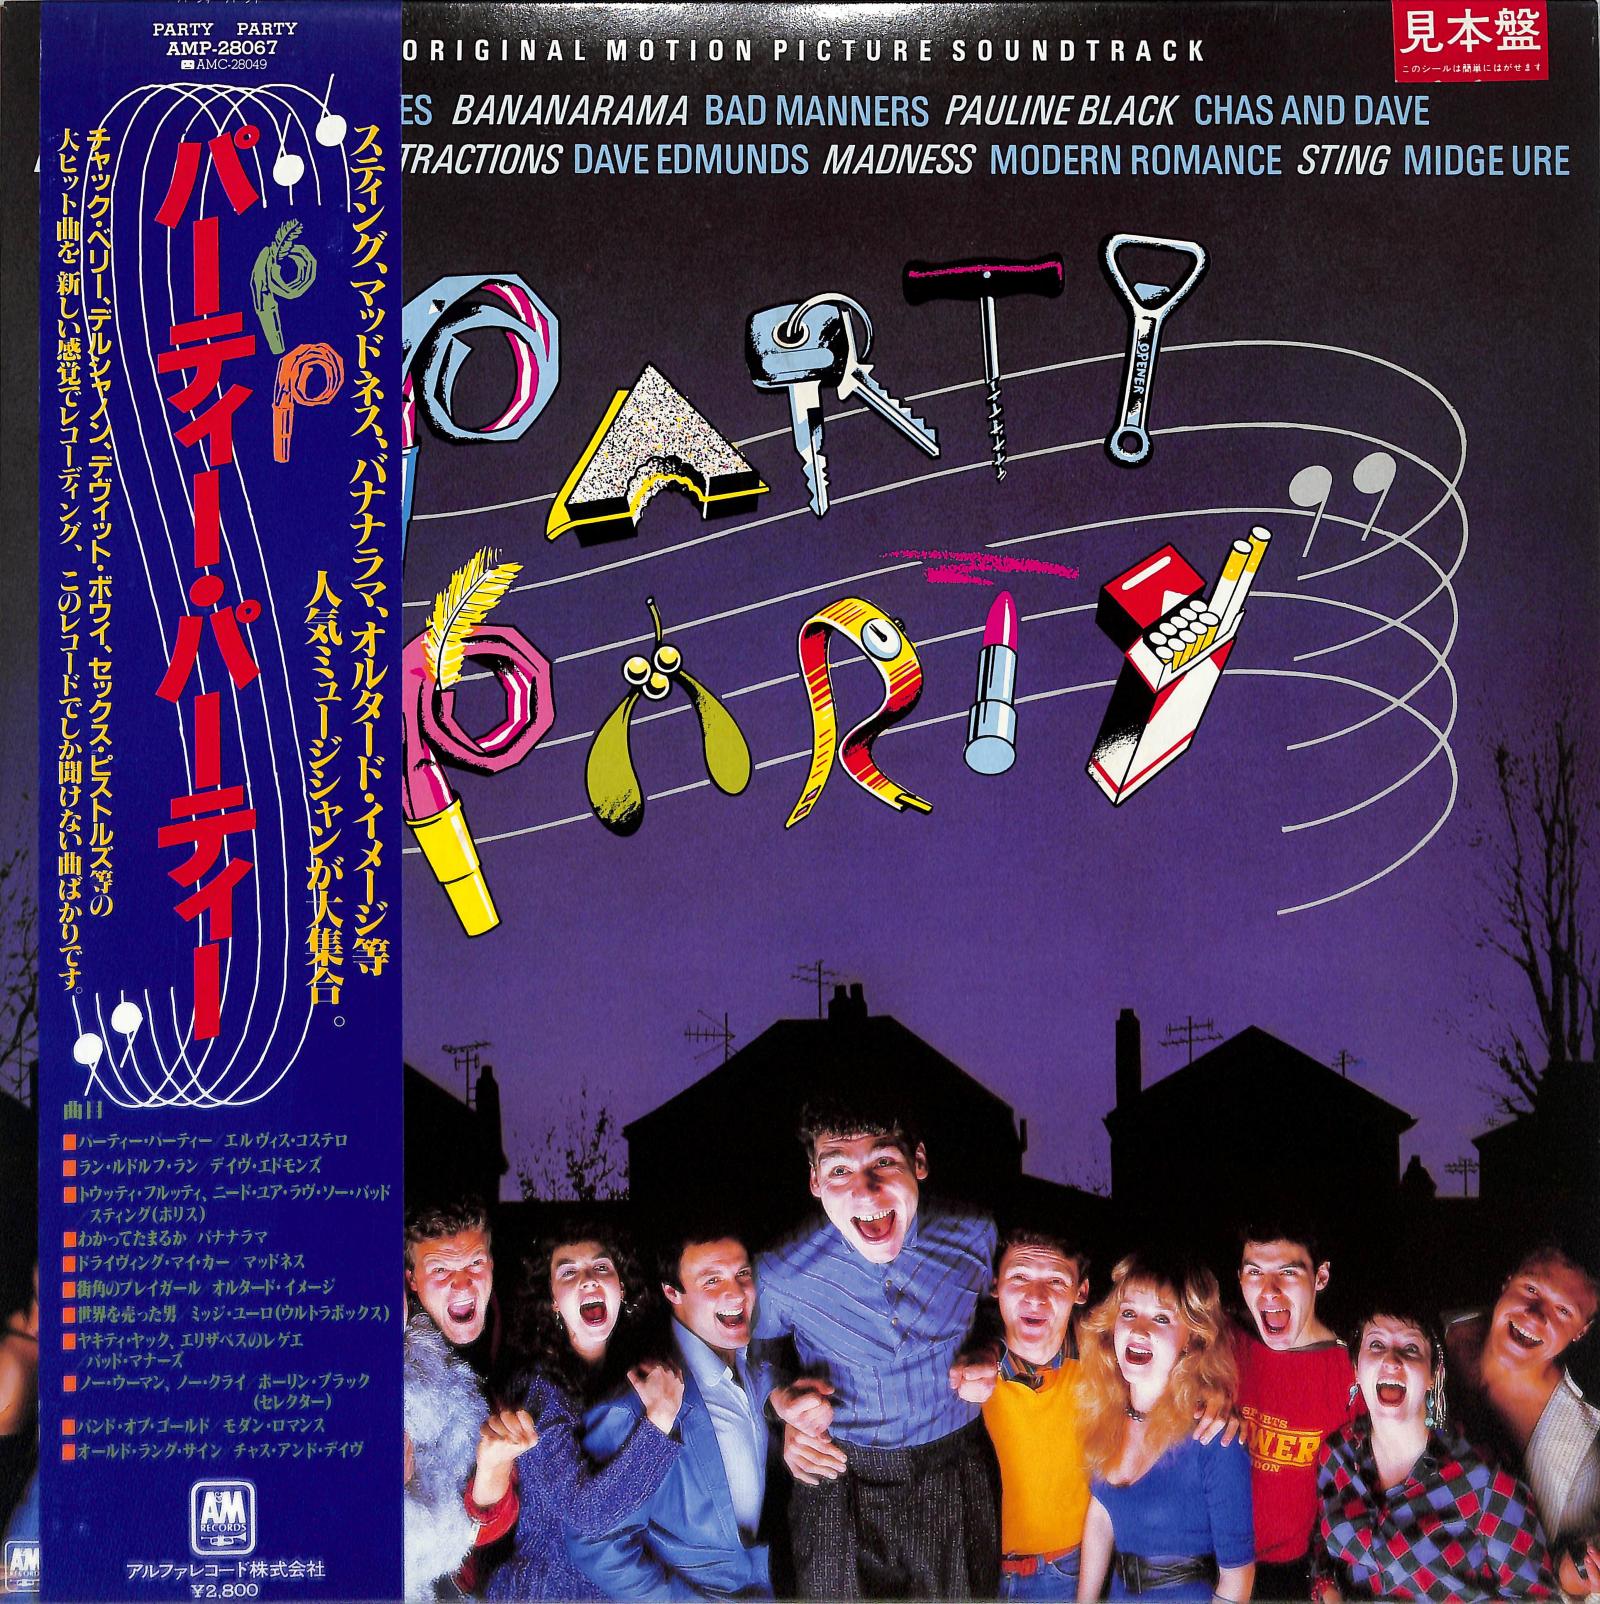 VA - Party Party (Original Motion Picture Soundtrack)